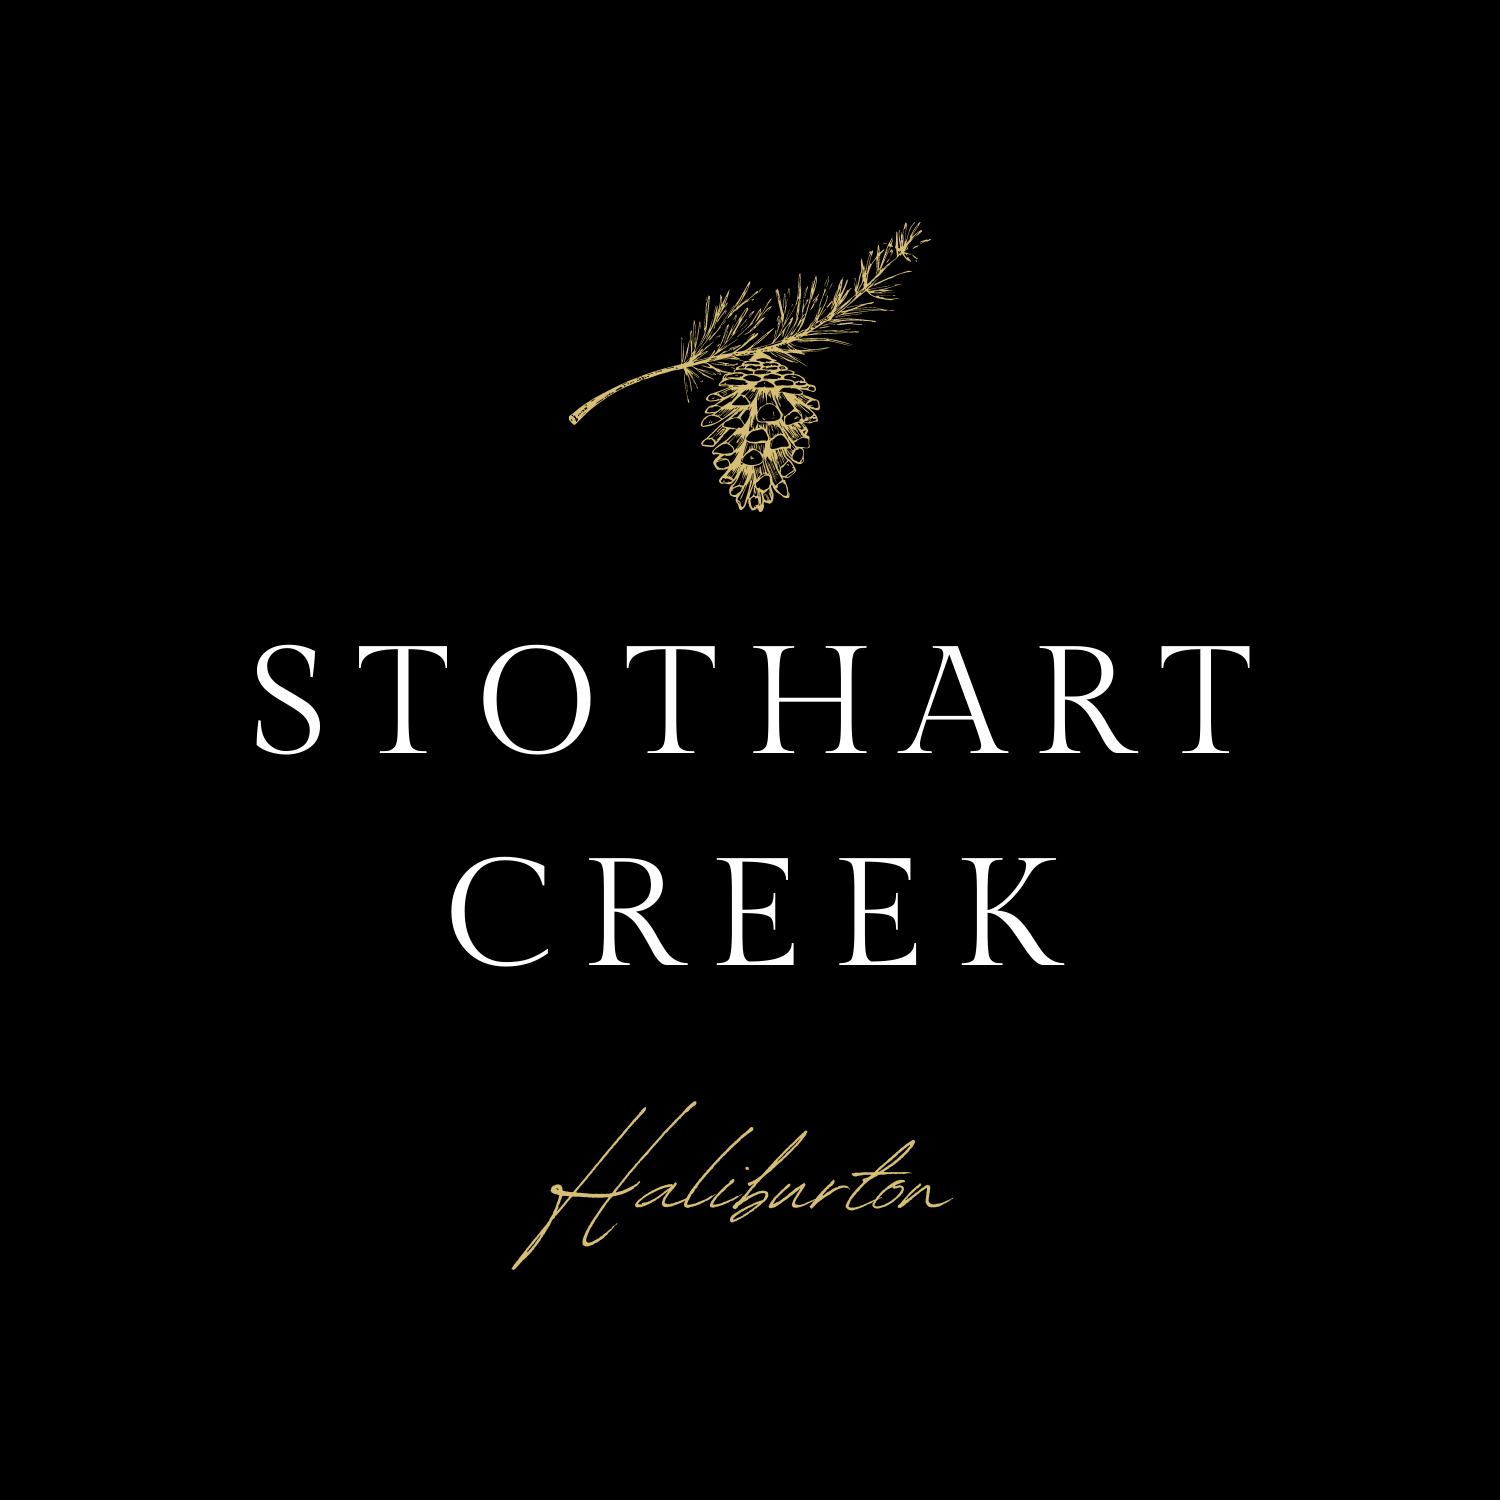 Stothart Creek